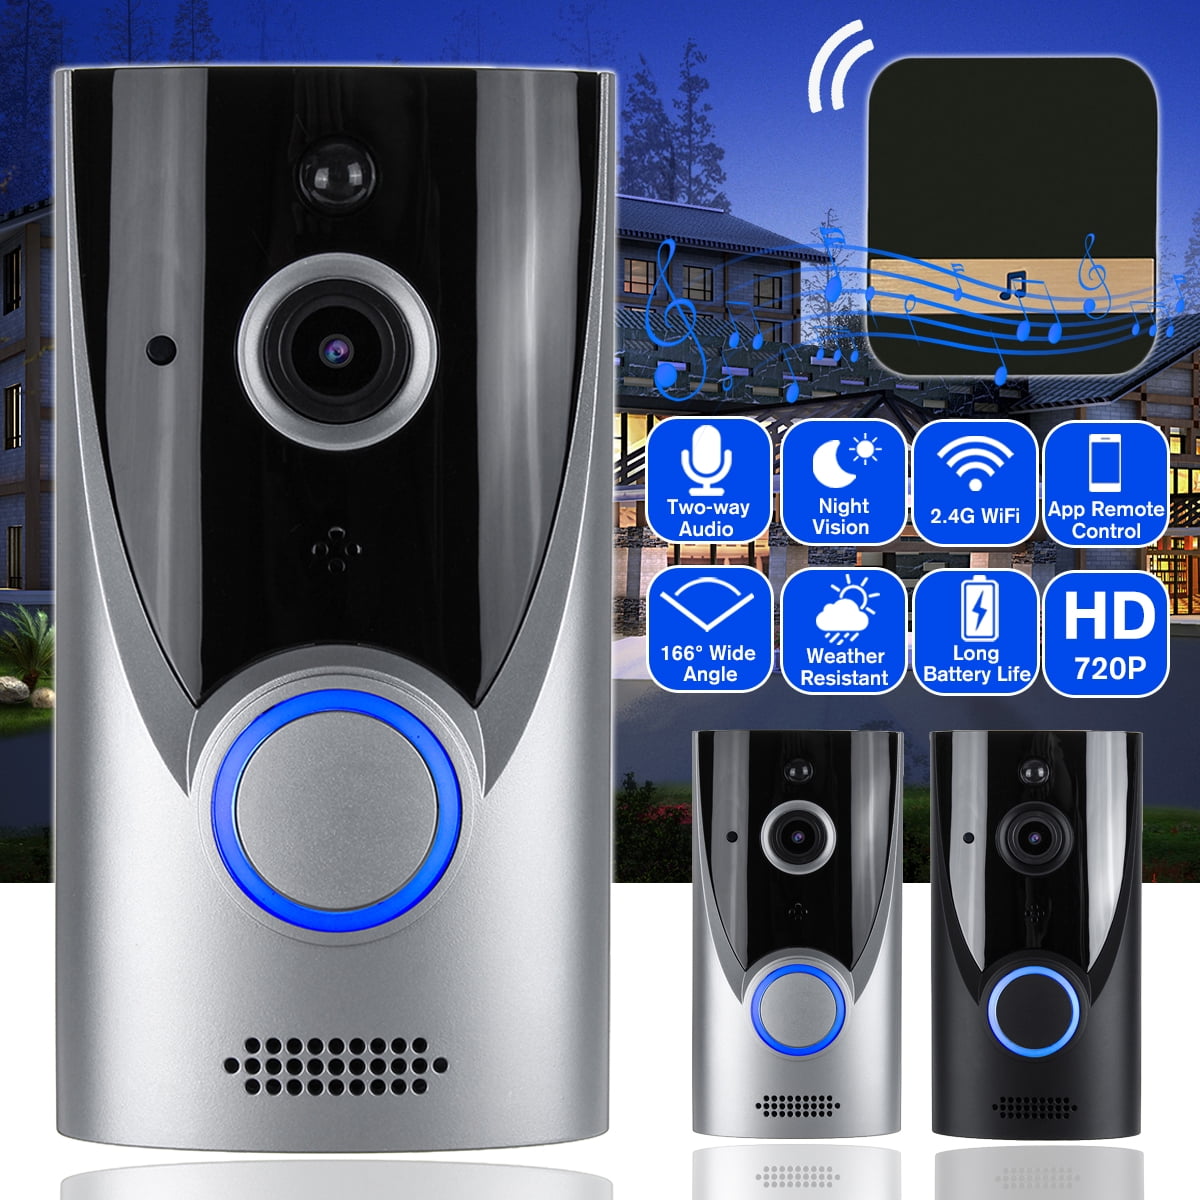 HD WiFi Video Doorbell Security Camera PIR Motion Door Bell